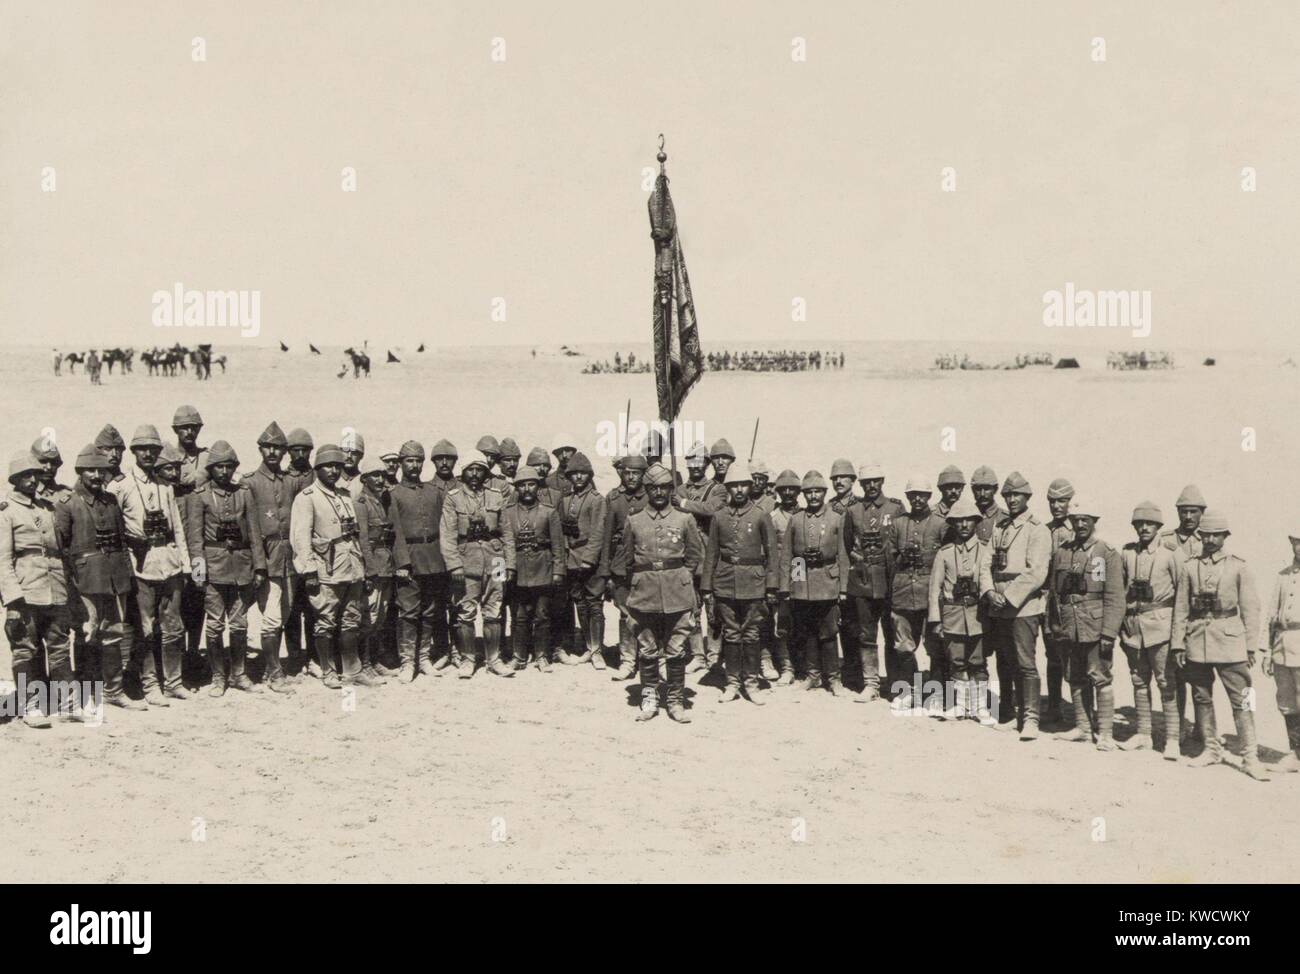 Les agents de l'Ottoman victorieux première bataille de Gaza, mars 1917. Ils ont repoussé la British Expeditionary Force égyptienne le 26 mars (BSLOC 2017 1 159) Banque D'Images